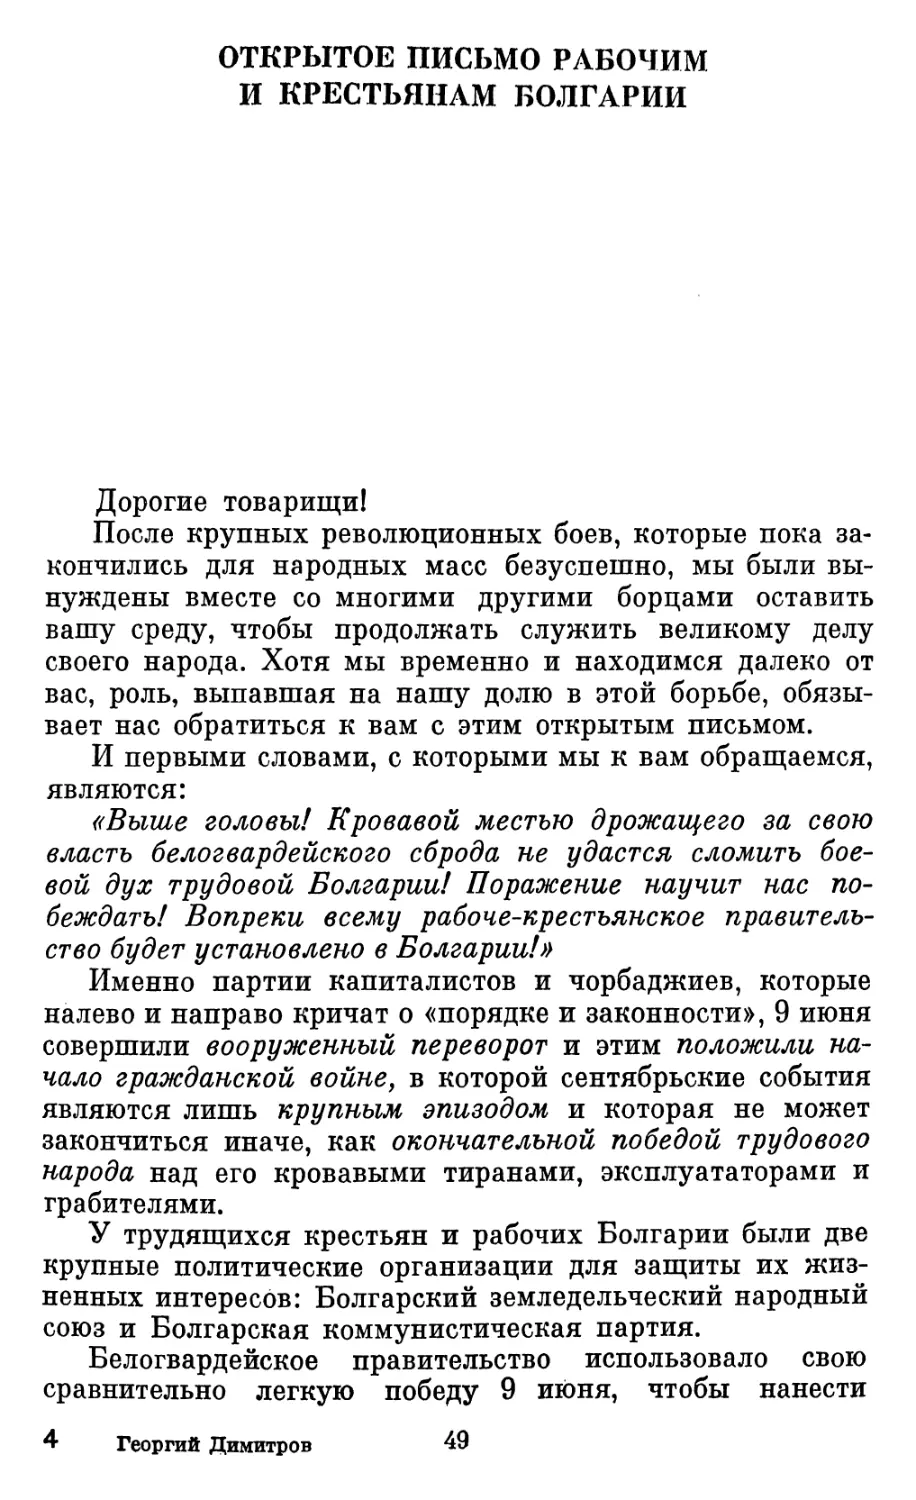 Открытое письмо рабочим и крестьянам Болгарии. Октябрь 1923 года